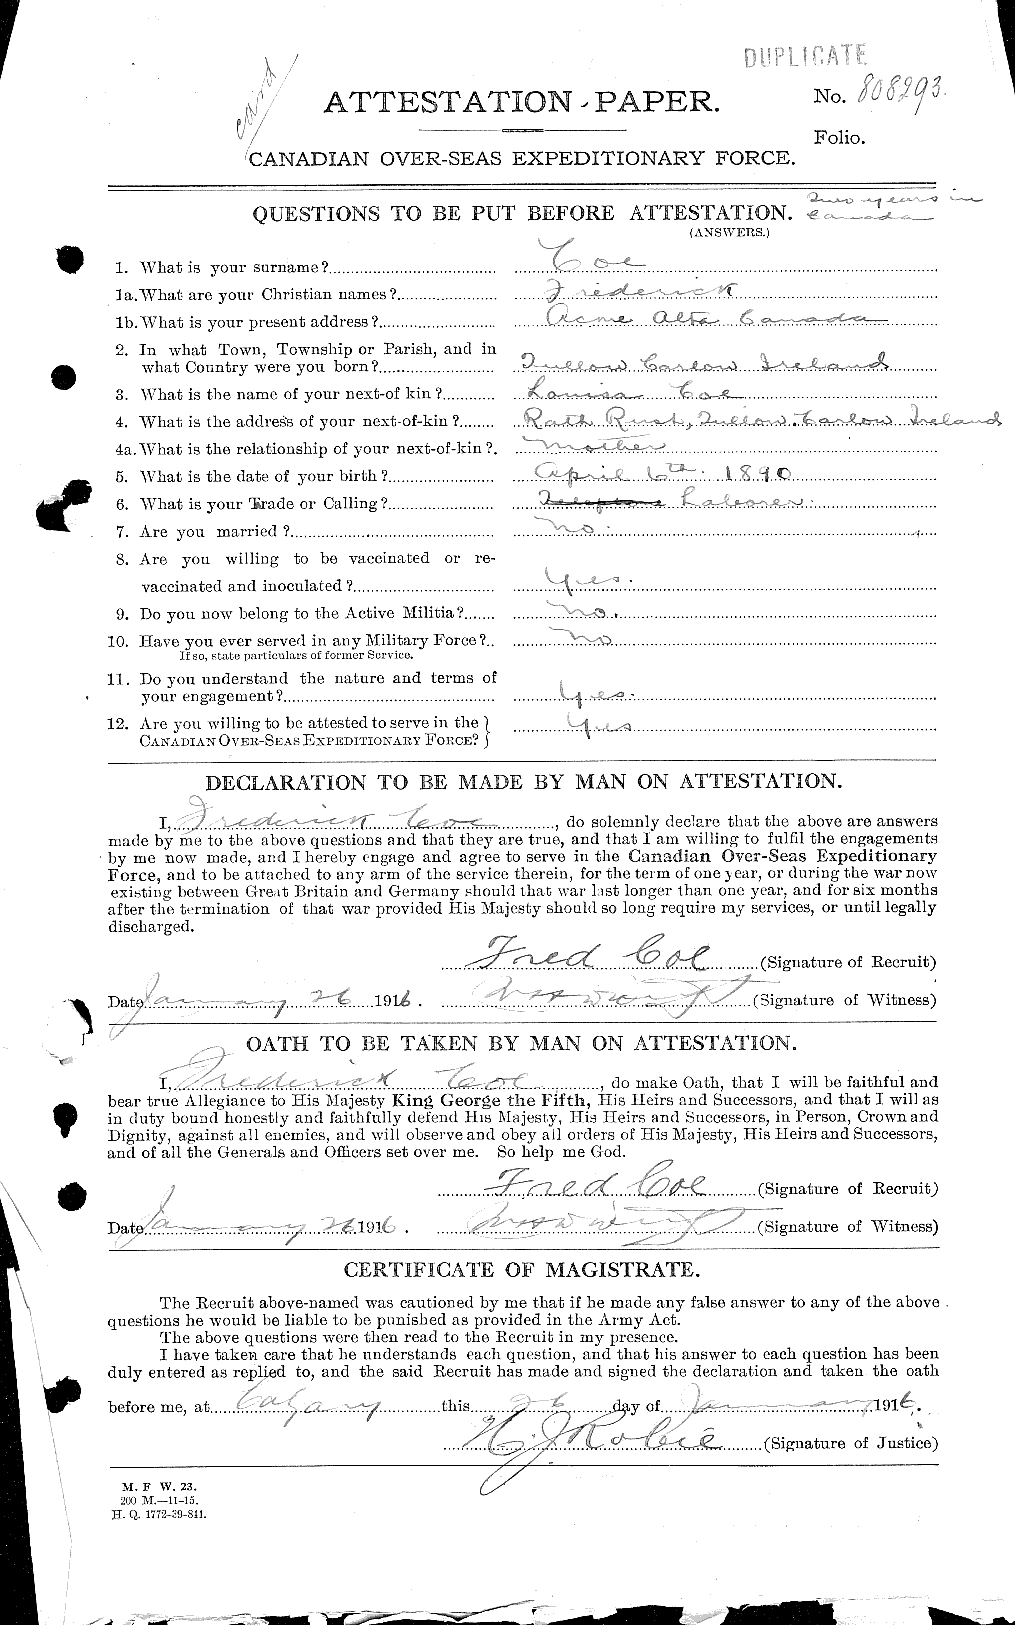 Dossiers du Personnel de la Première Guerre mondiale - CEC 026948a